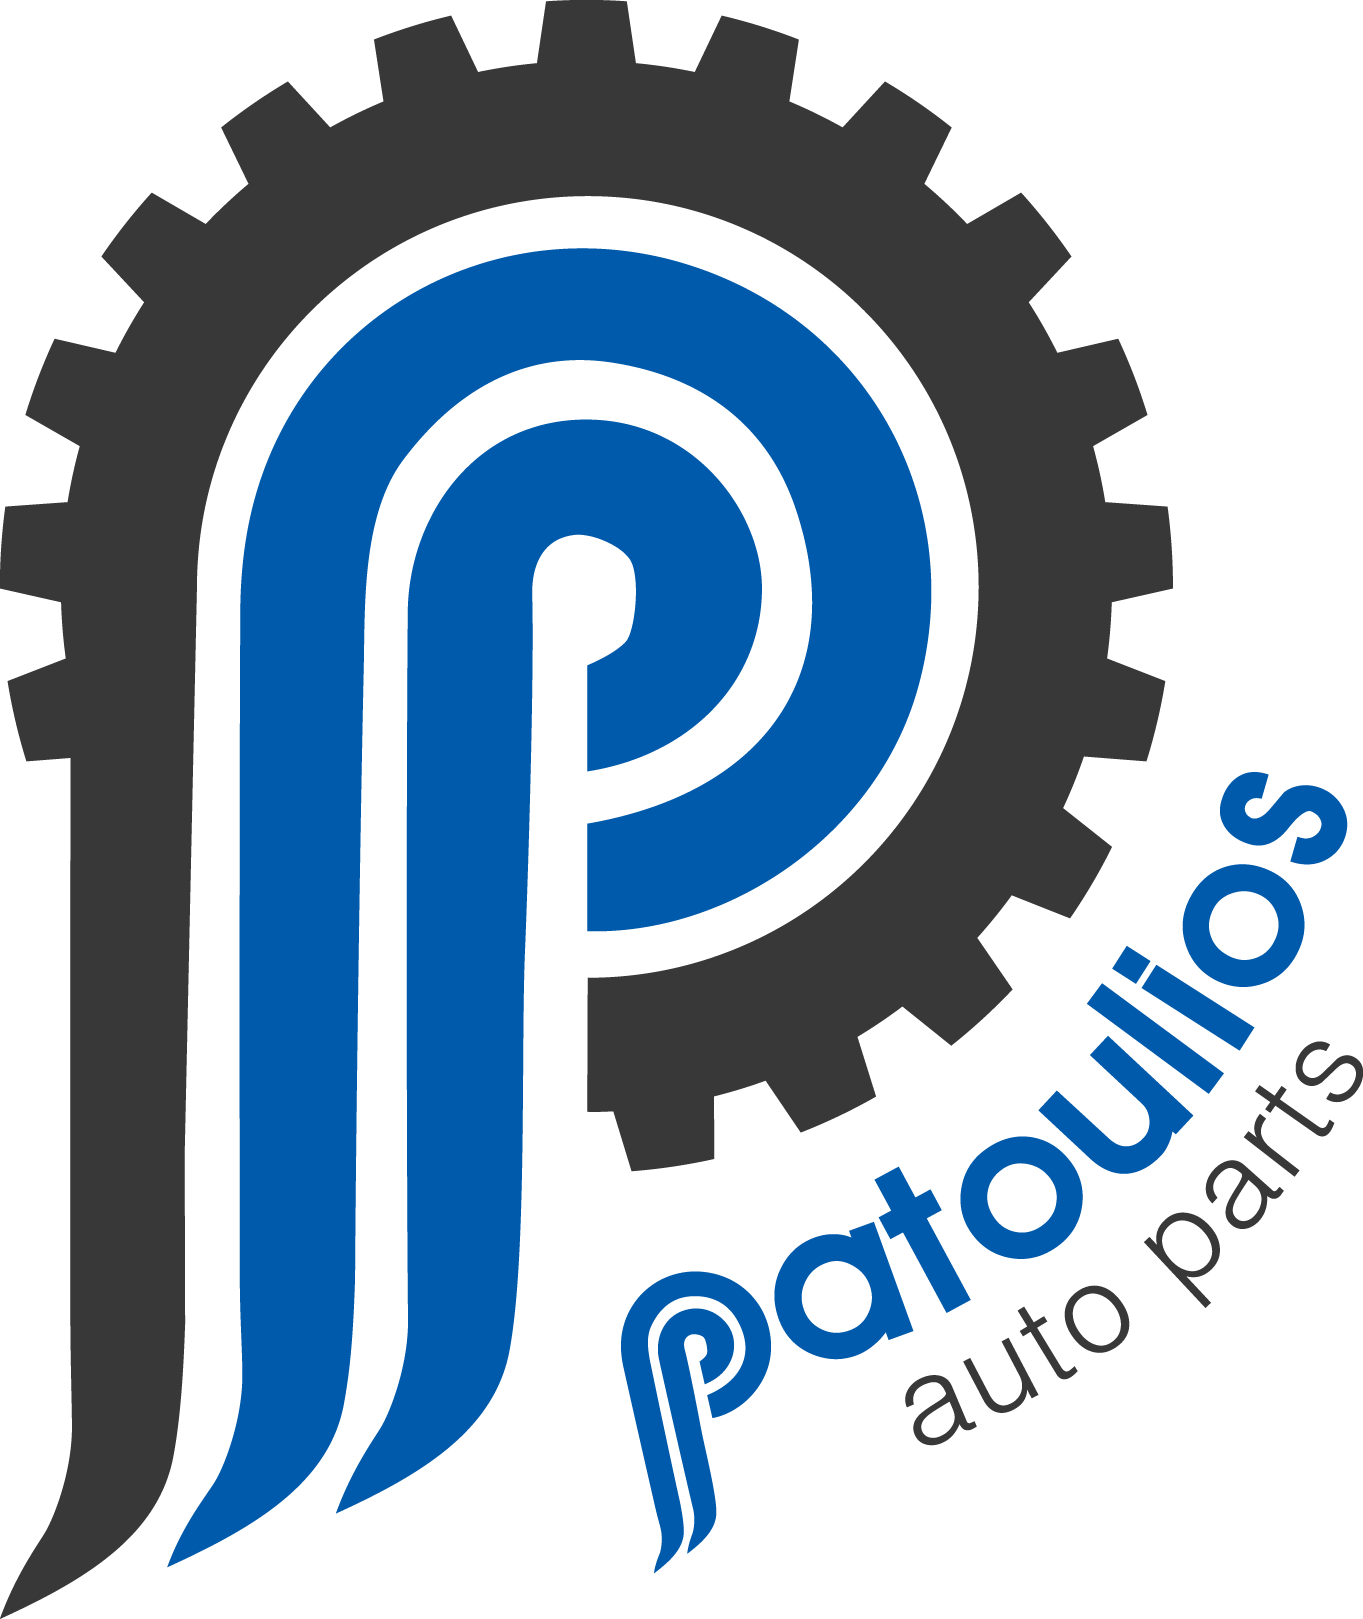 Patoulios Autoparts